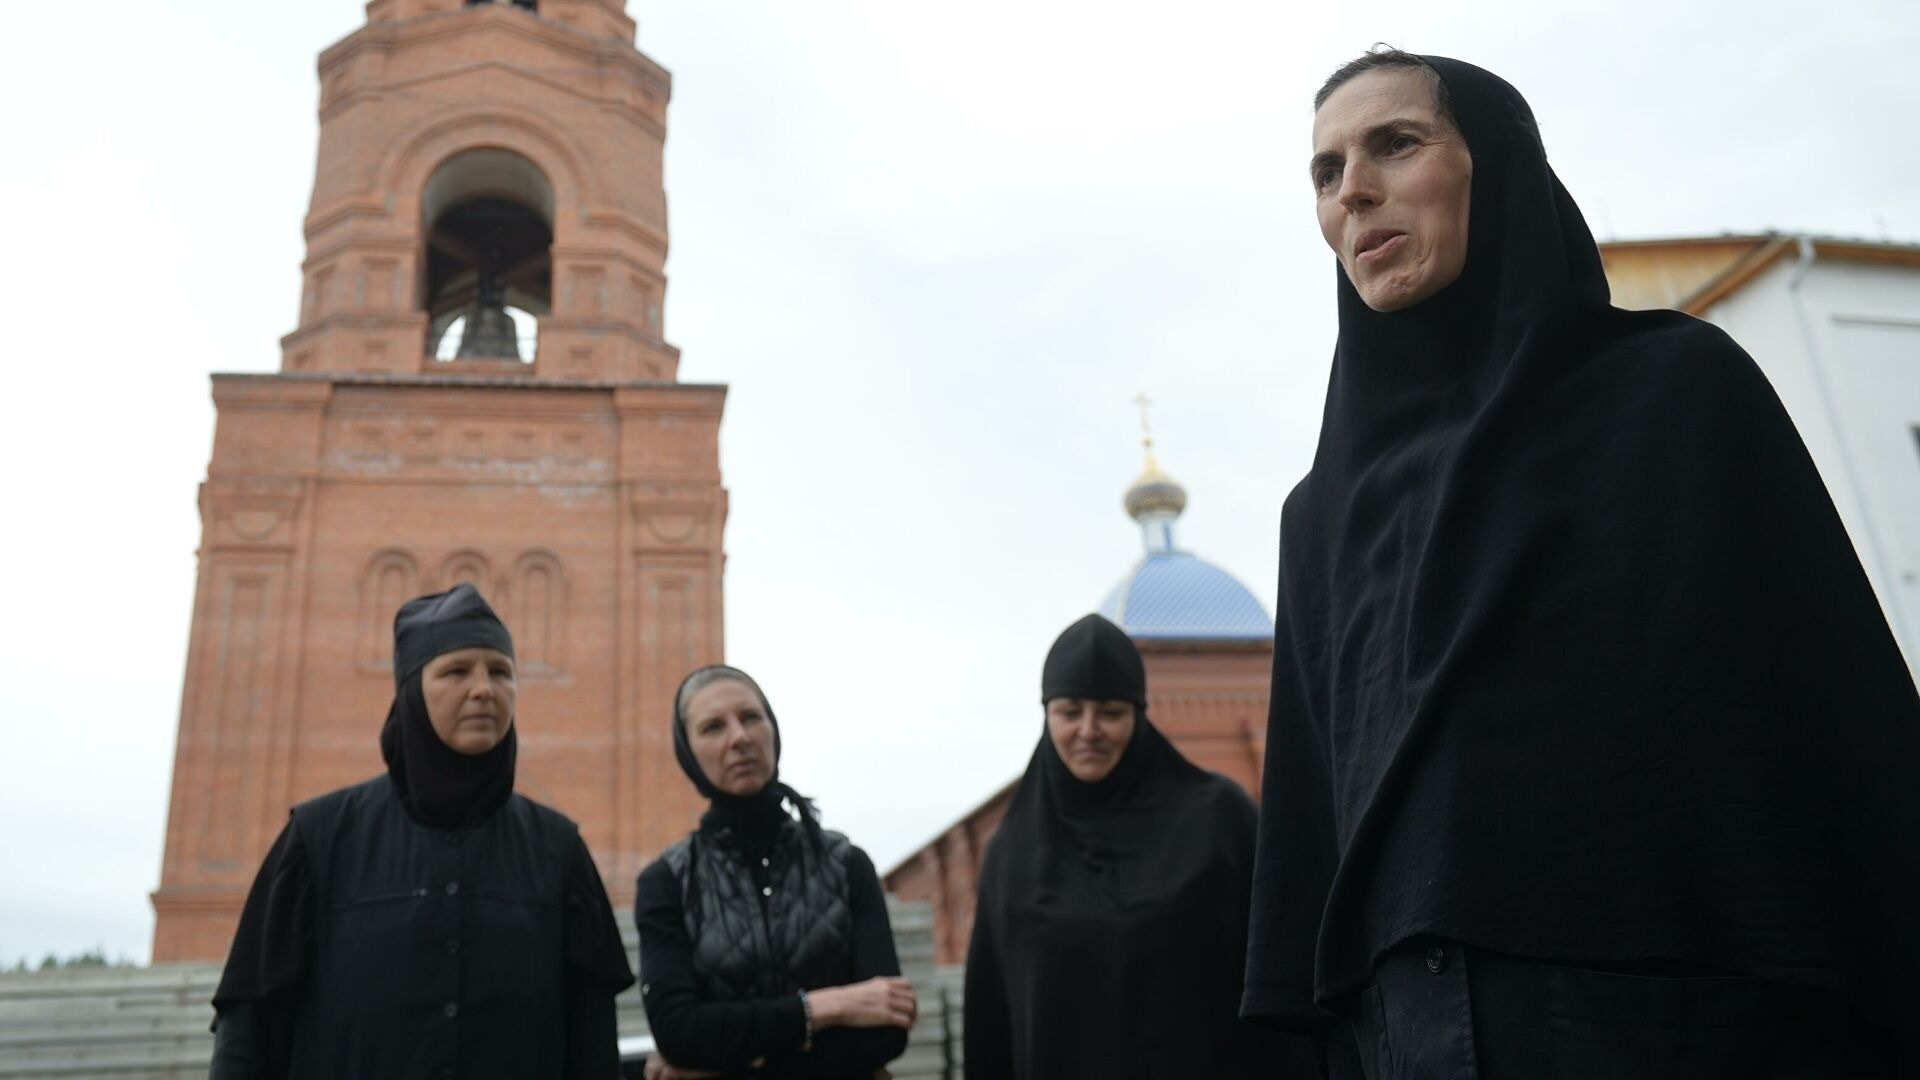 Непослушницы | 20 человек задержали в Среднеуральском монастыре